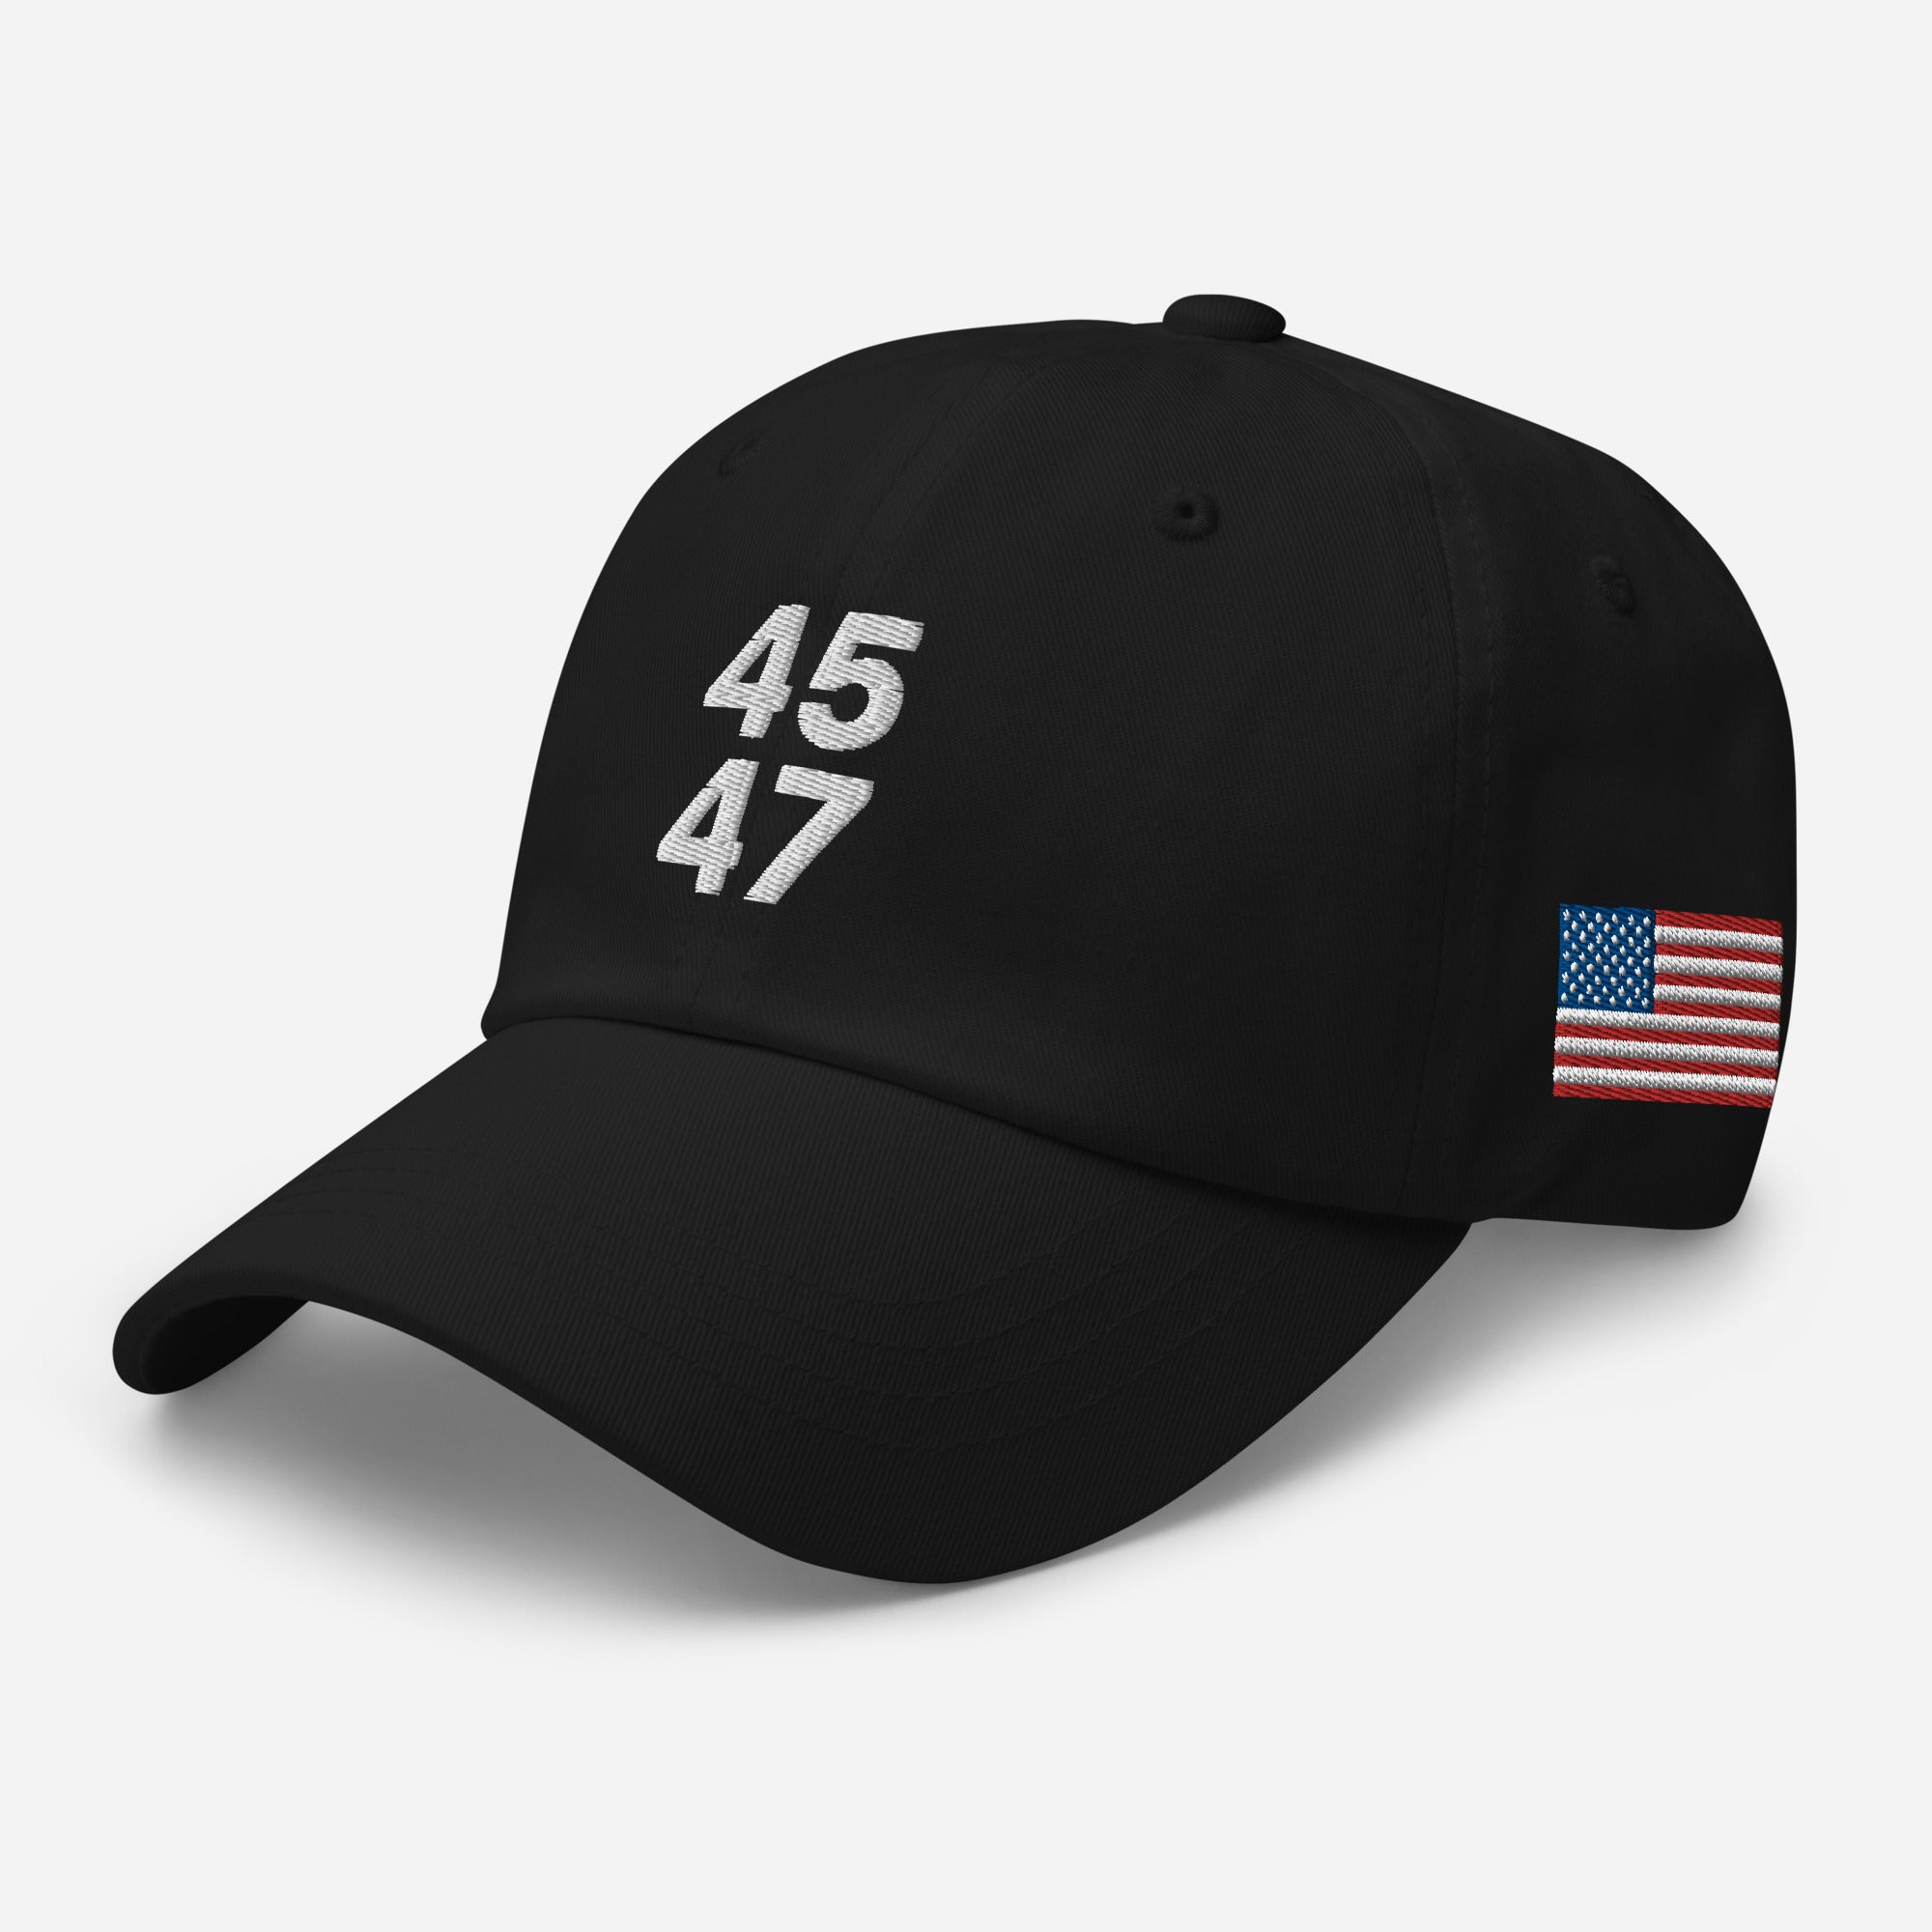 45 47 dad hat, 45 47 baseball cap, 45 47 trump hat, 45 Trump hat, Donald Trump 2024, 45 dad cap, Republican Gifts, 45 47 conservative gifts